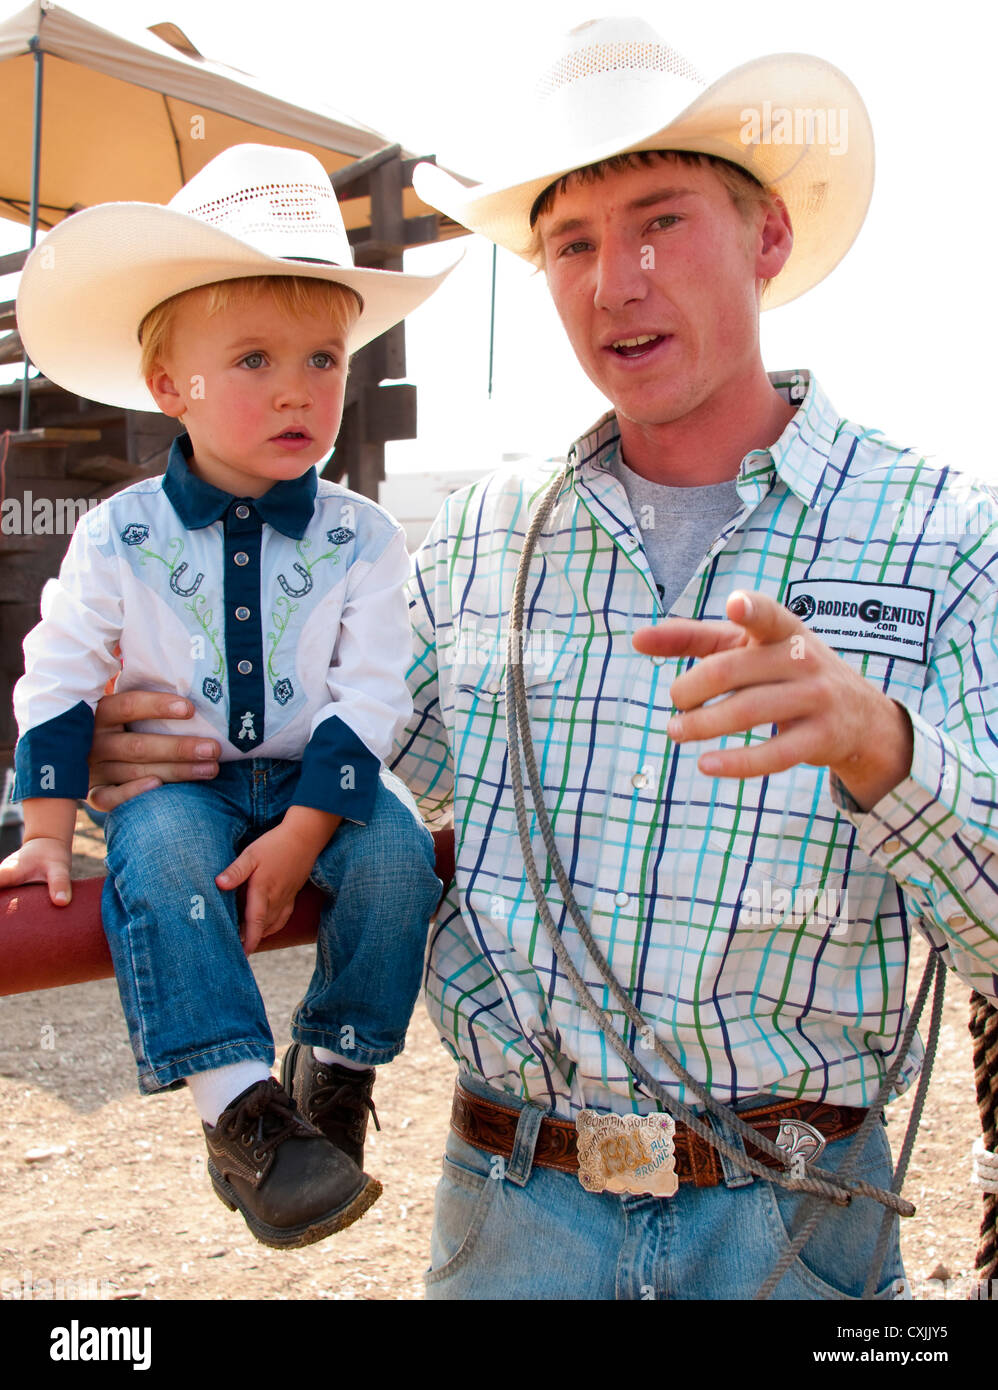 Cowboys appréciant les Rodeo, Bruneau, California, USA Banque D'Images